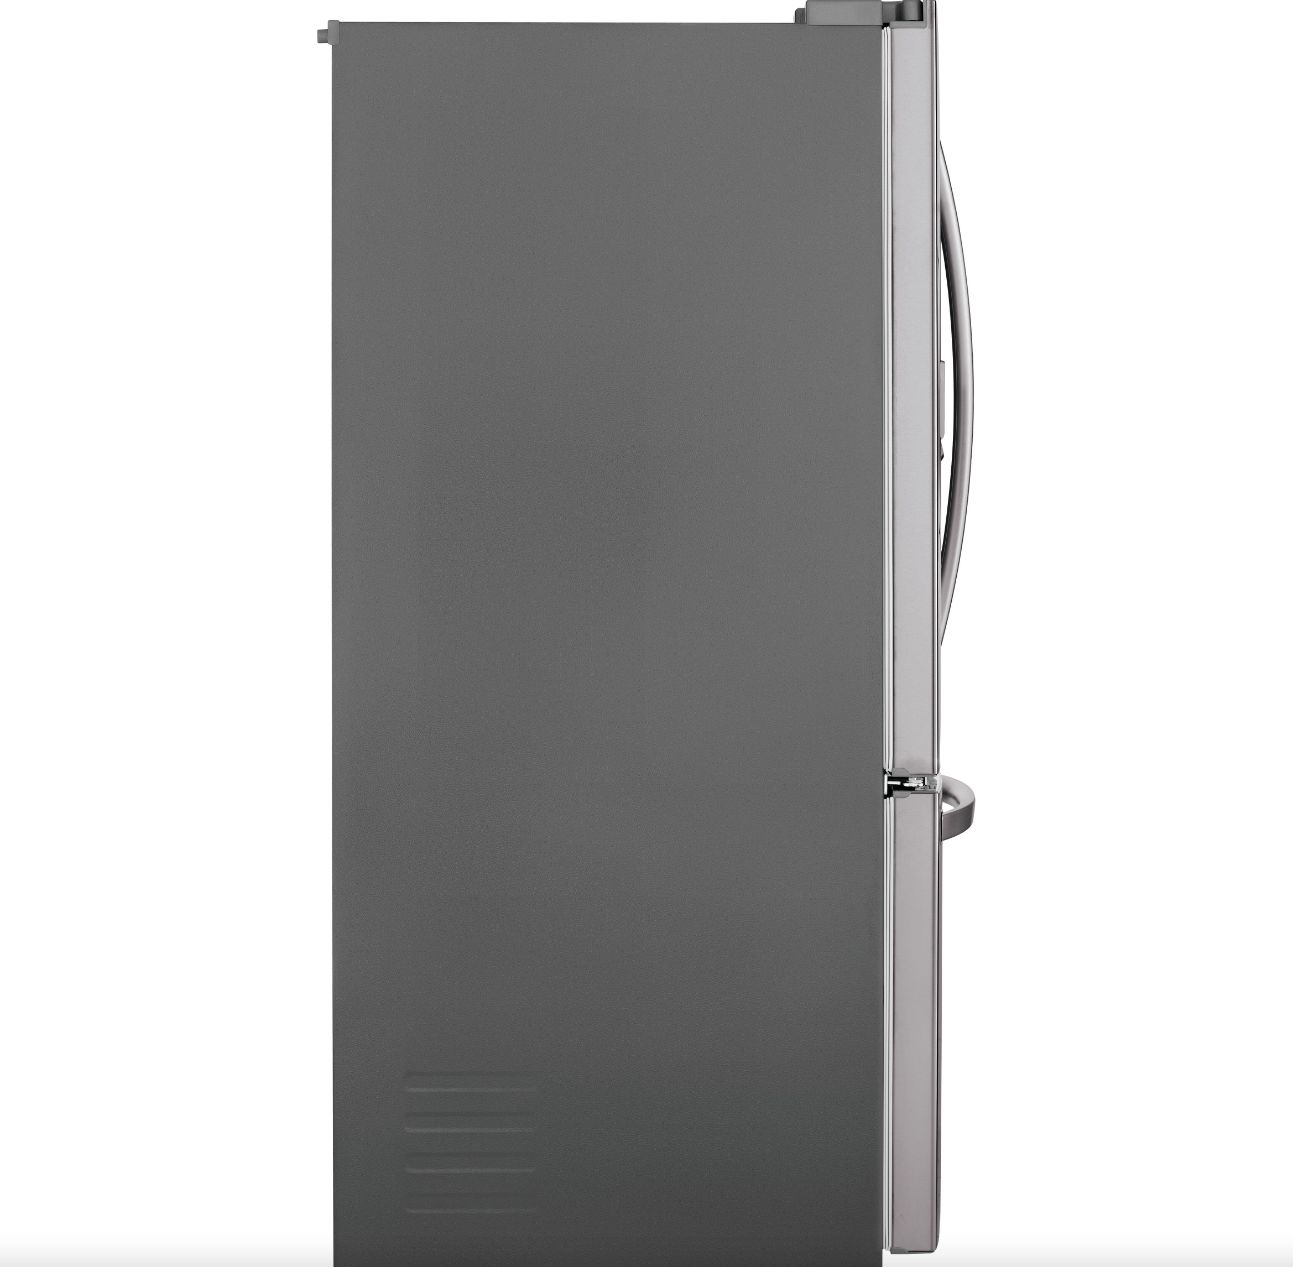 LG 36 Inch 3-Door French Door Refrigerator in Stainless Steel 22 Cu. Ft. (LFXC22526S)